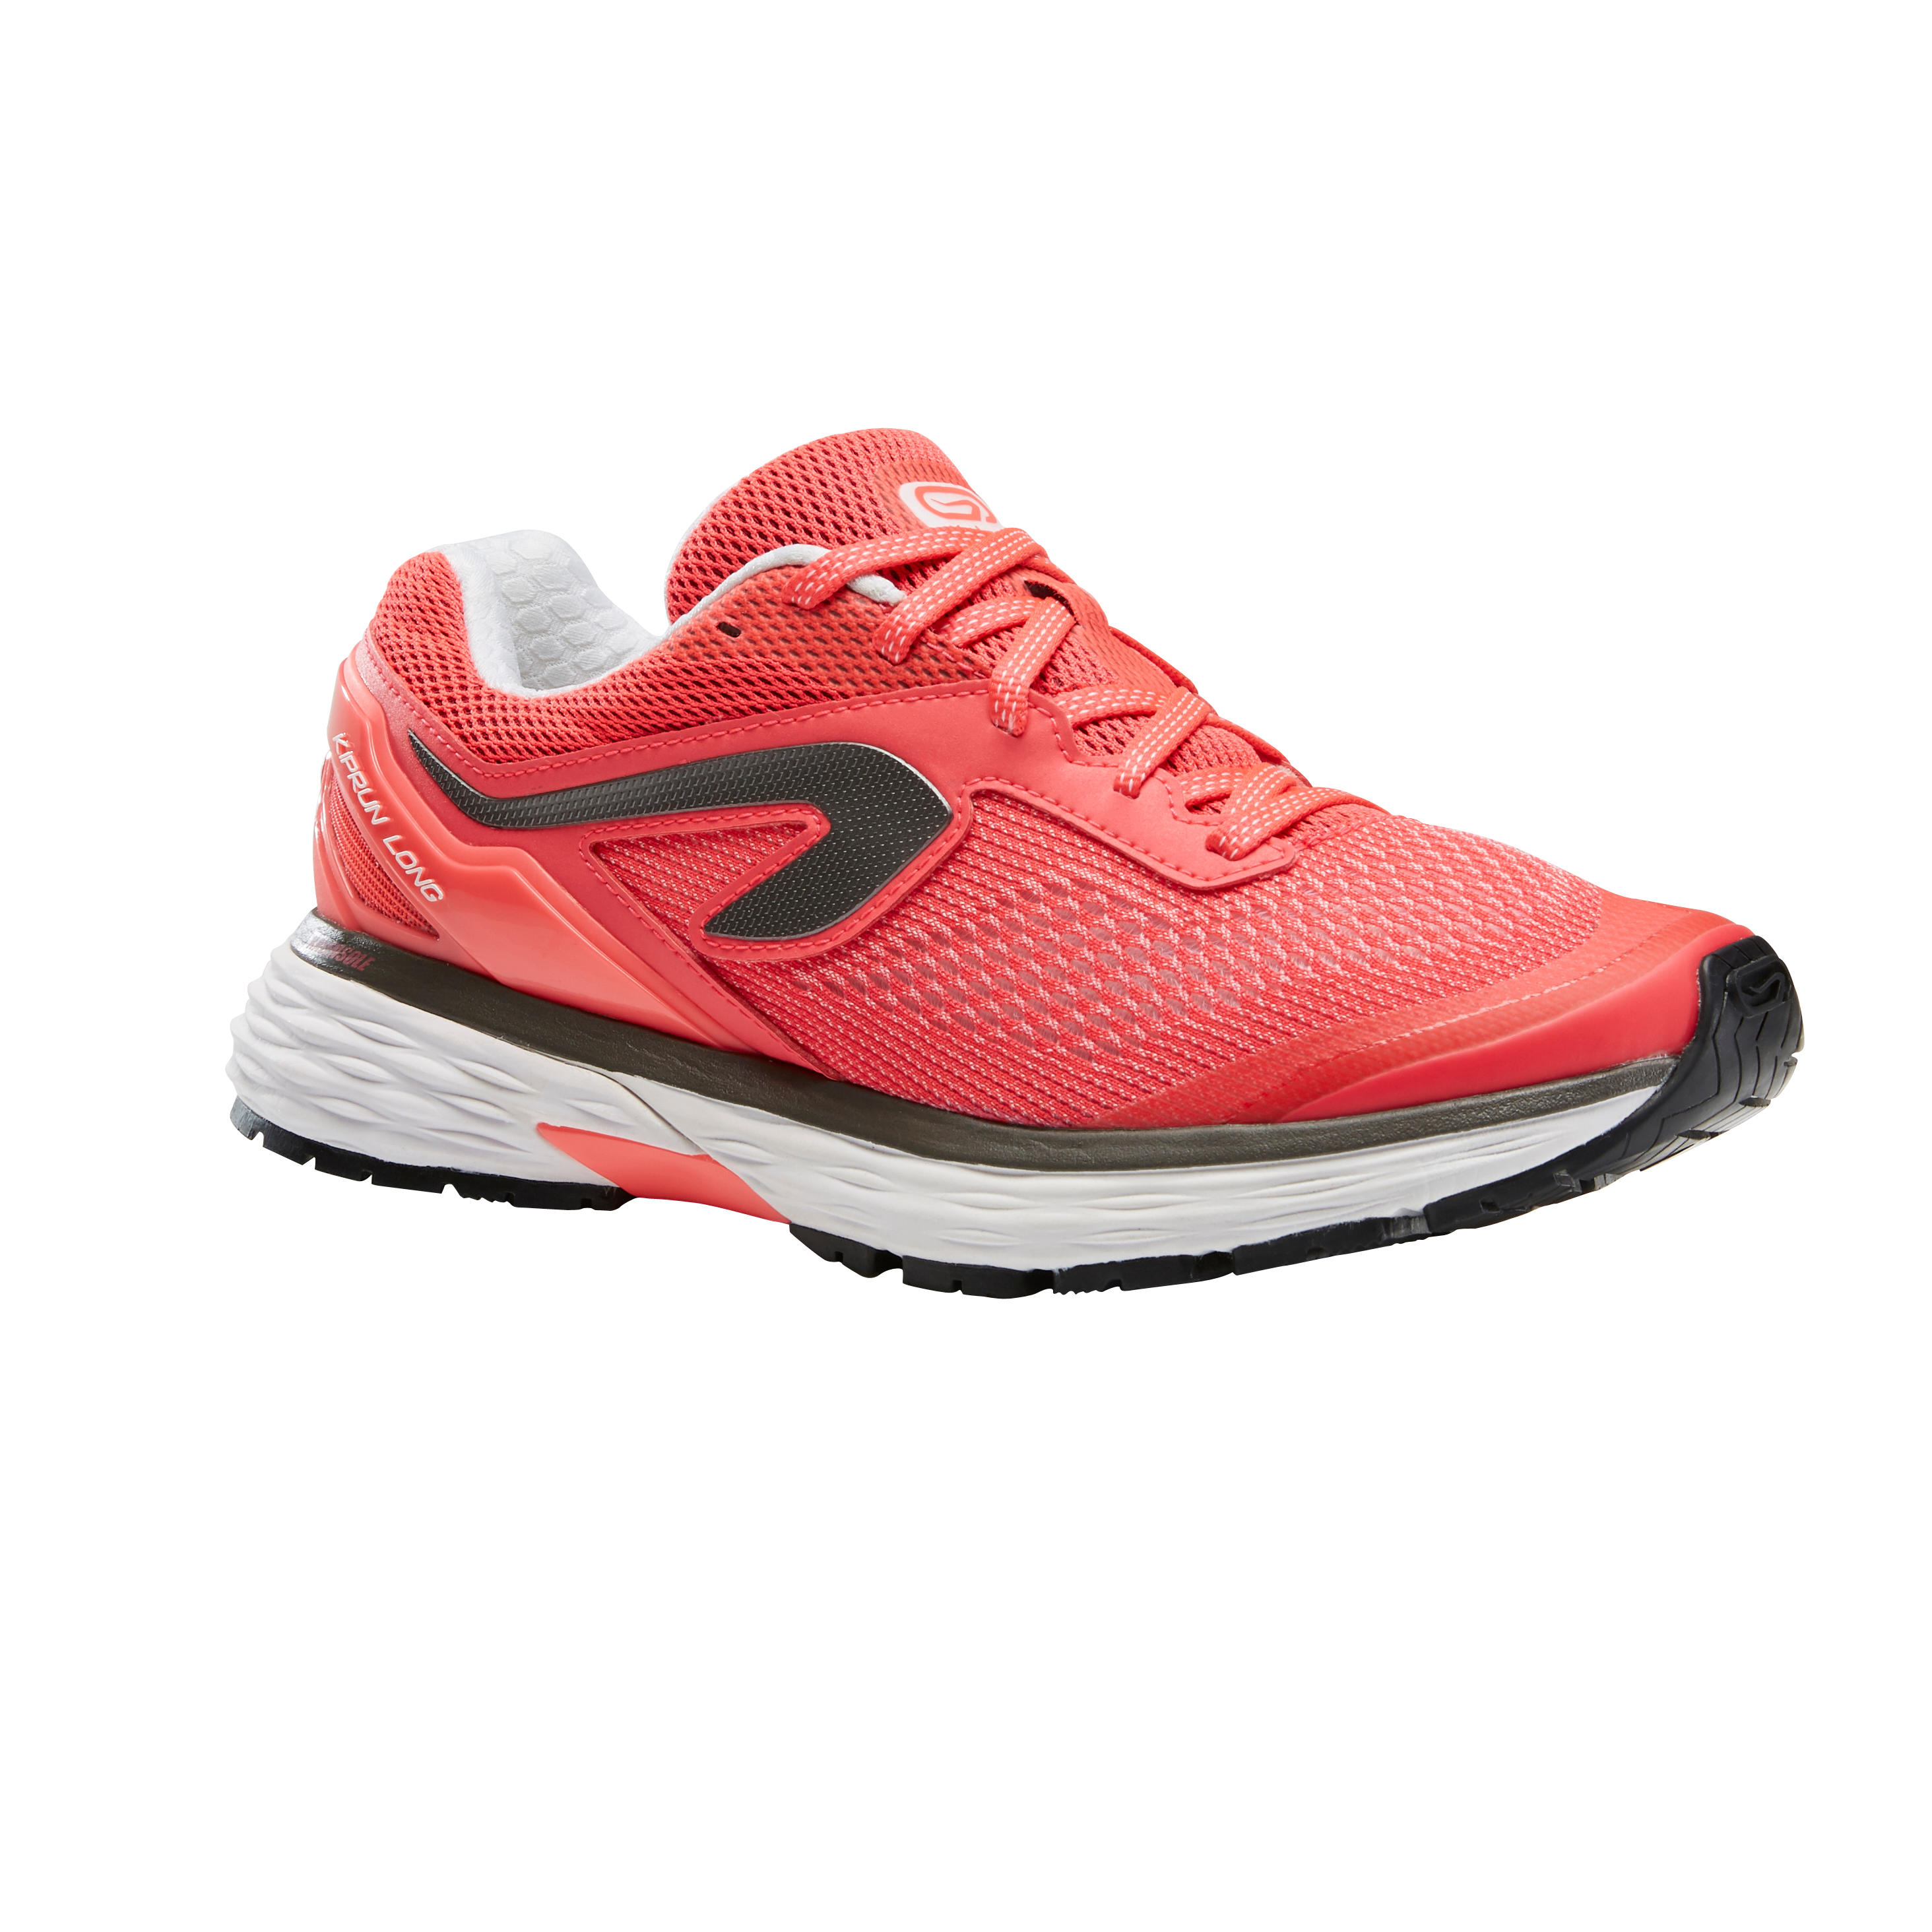 KIPRUN Kiprun Long Women's Running Shoes - Pink